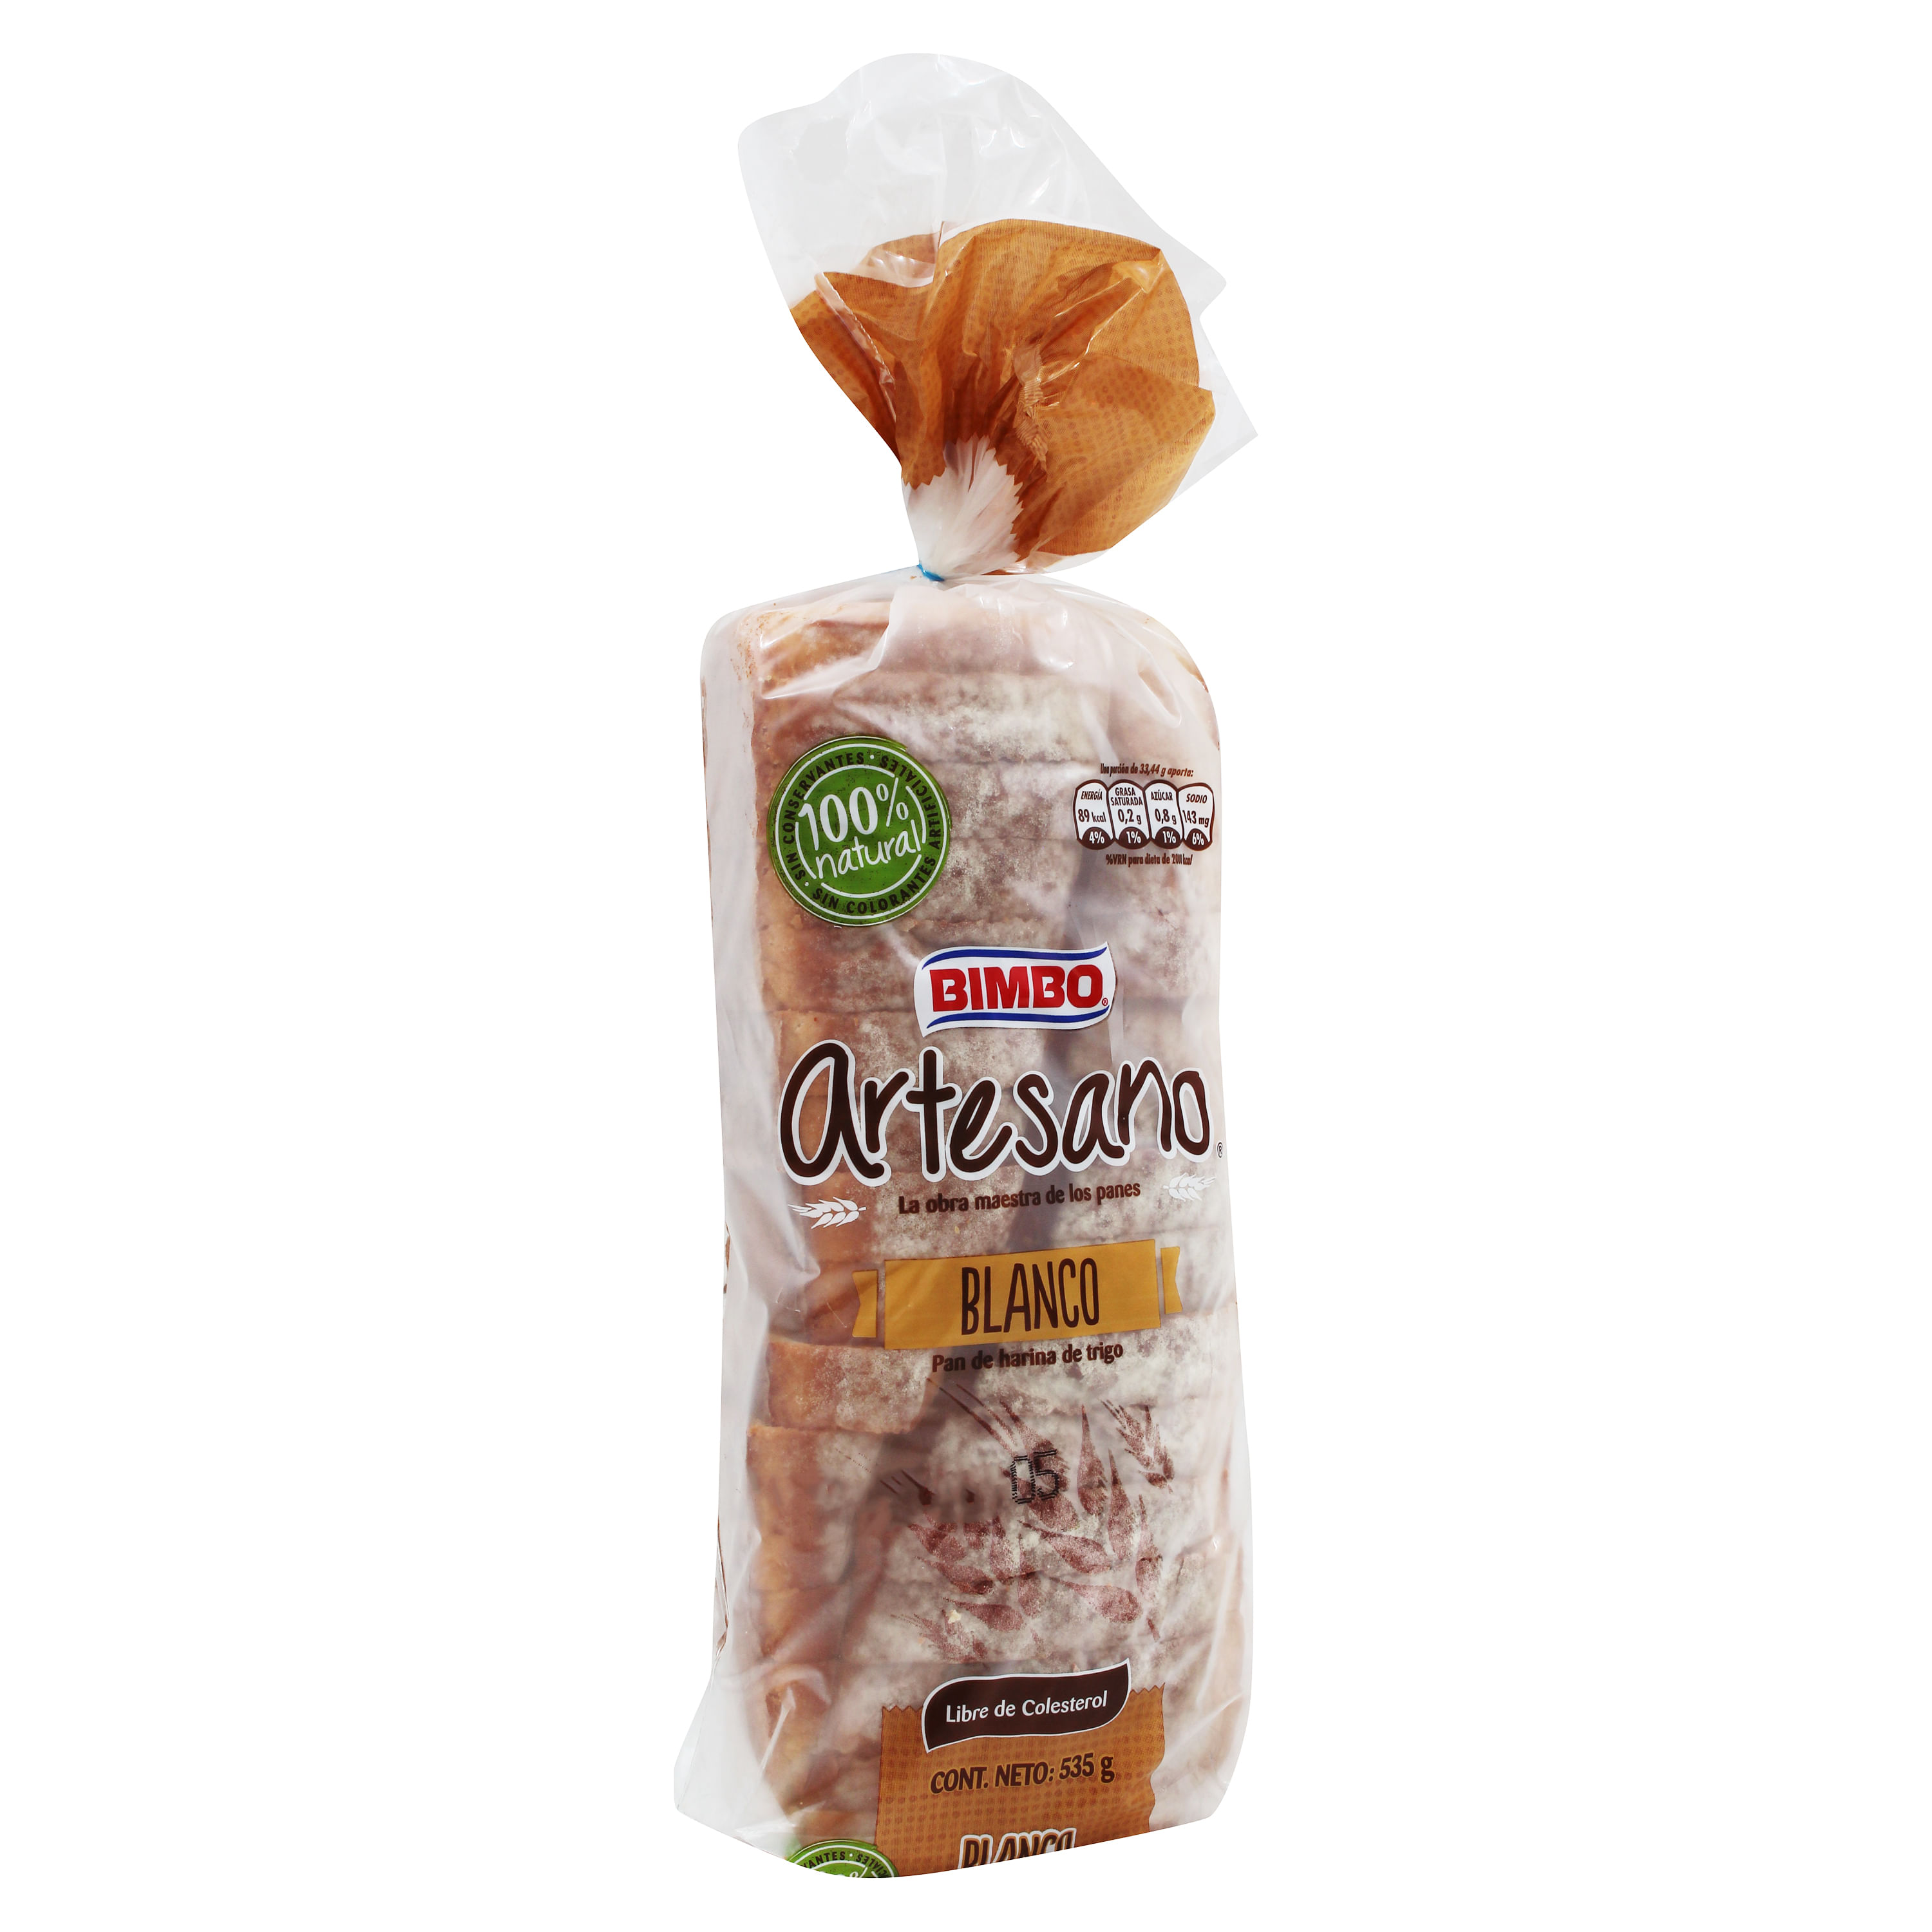 Bimbo Artesano Lactal Pan de Molde Original White Molded Sliced Bread, 500  g / 17.6 oz loaf